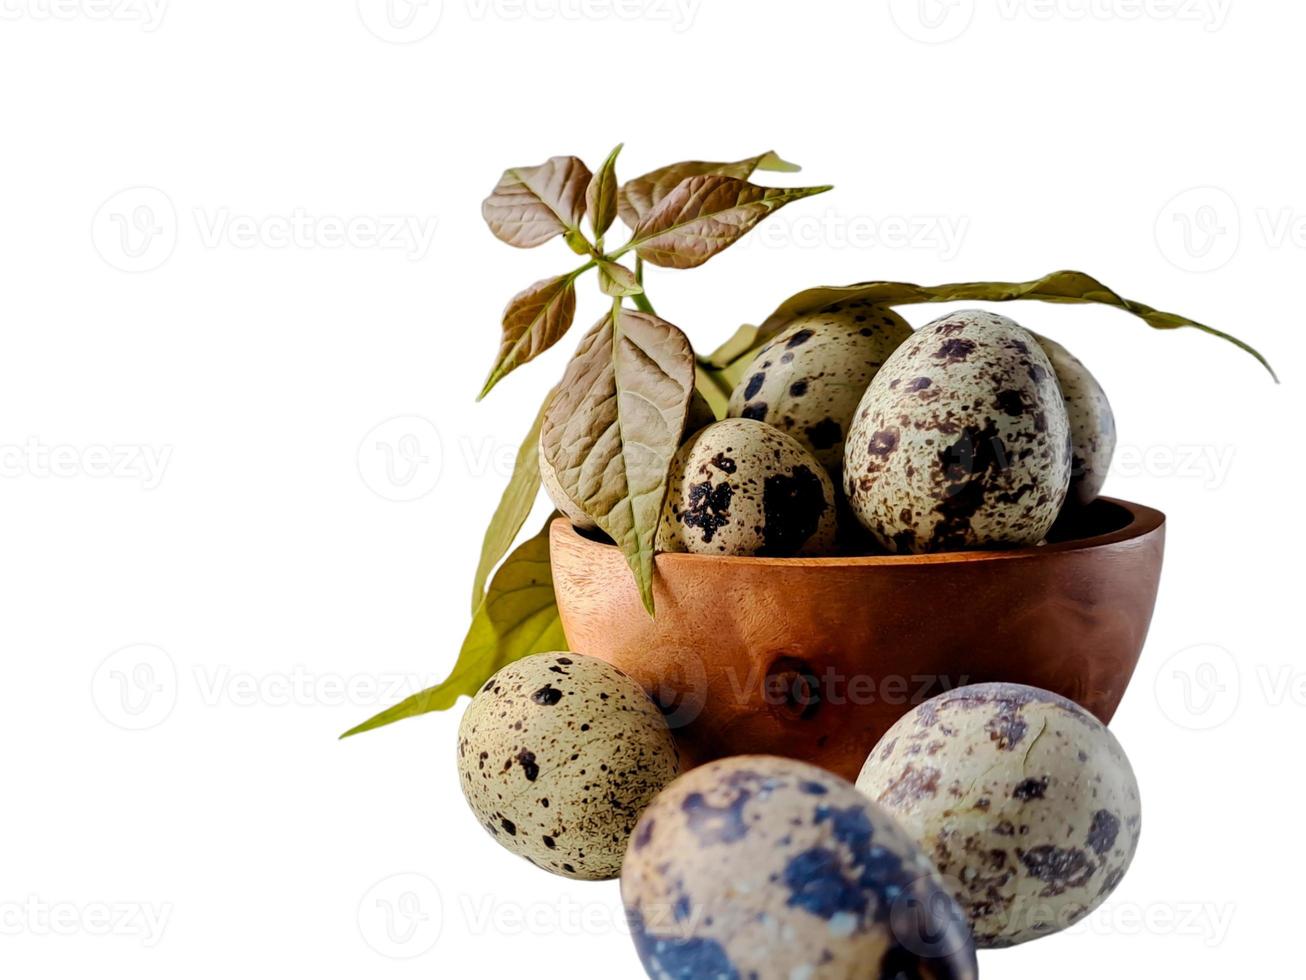 huevos de codorniz de codorniz, una colección de huevos de codorniz en un plato de madera con fondo blanco aislado foto